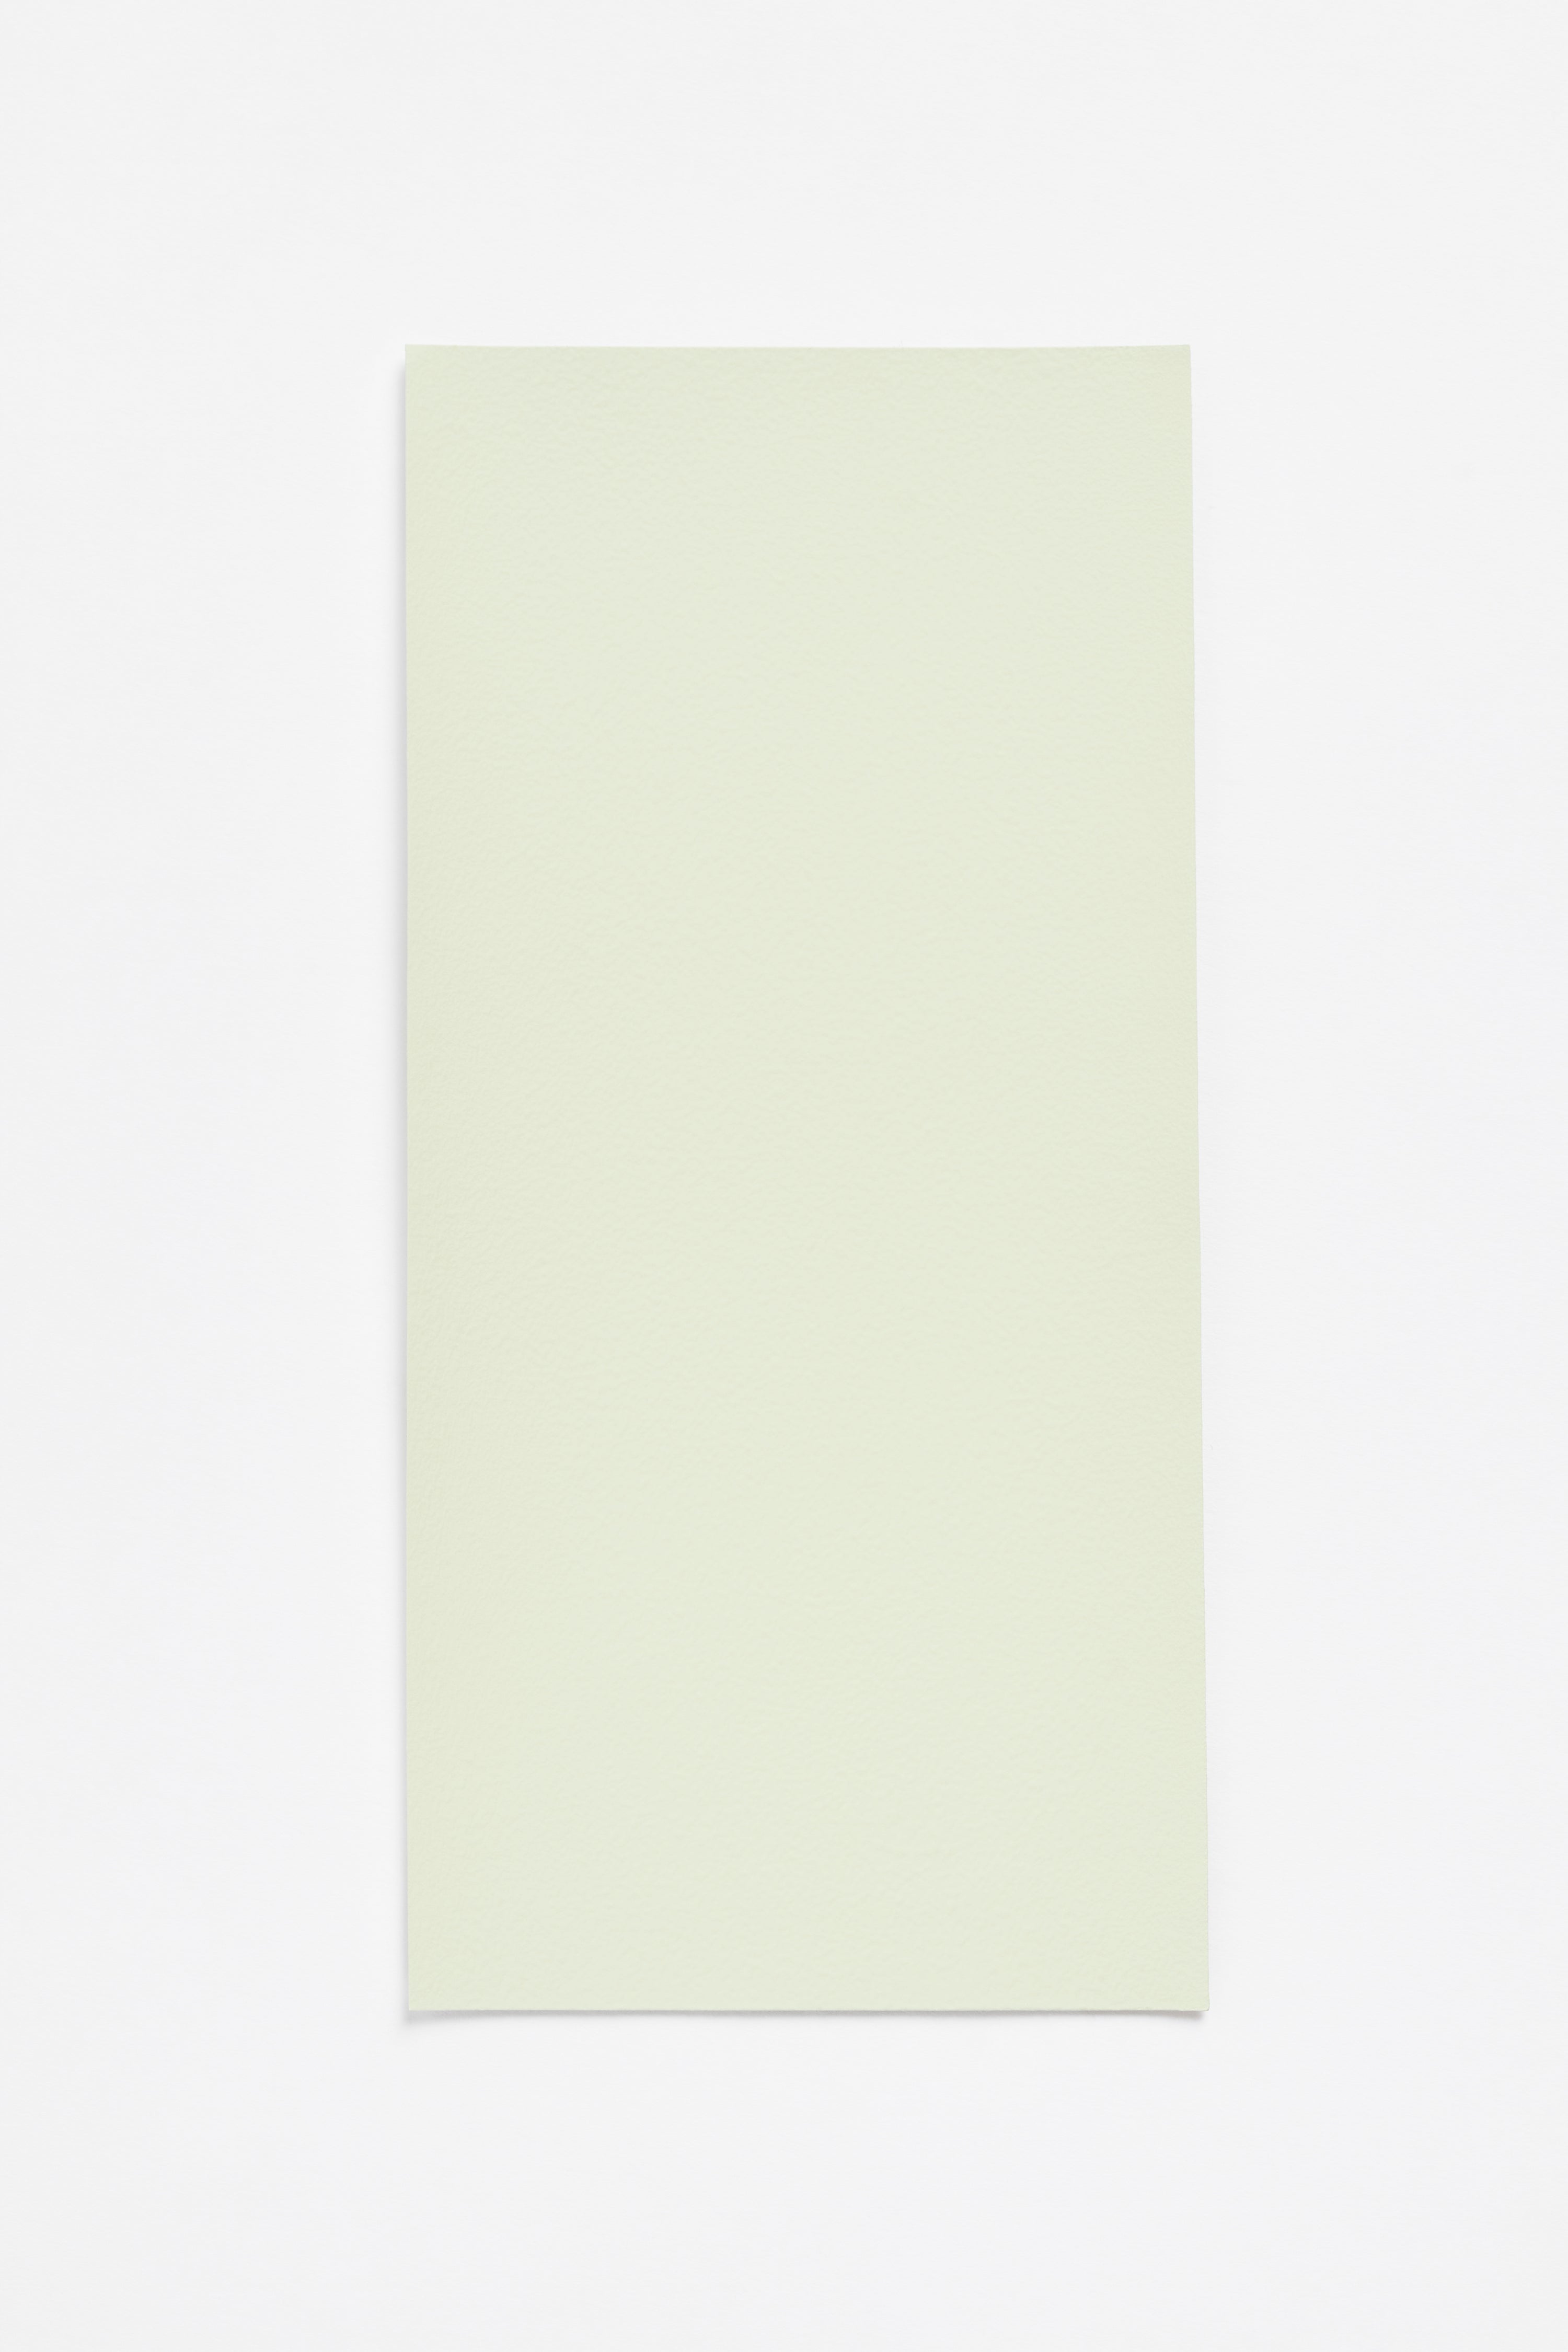 Asperge — a paint colour developed by Inga Sempé for Blēo